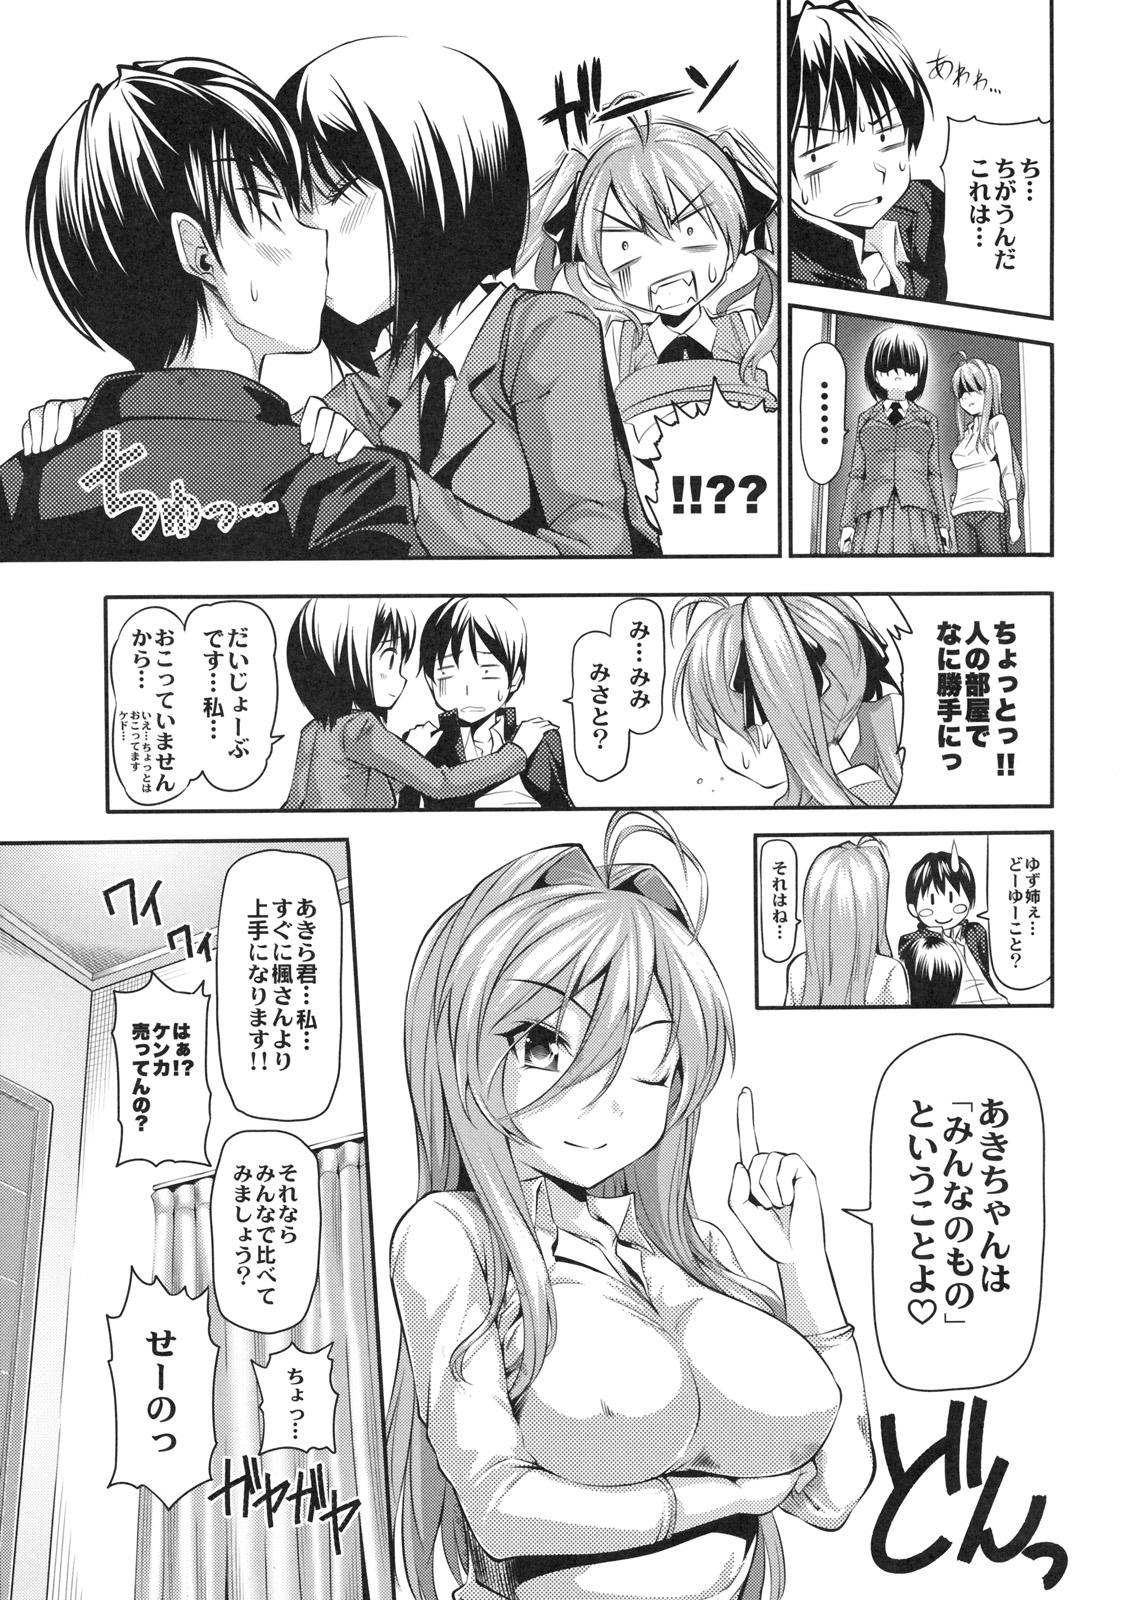 Fucking Shinzui EX Vol. 2 Classroom - Page 10